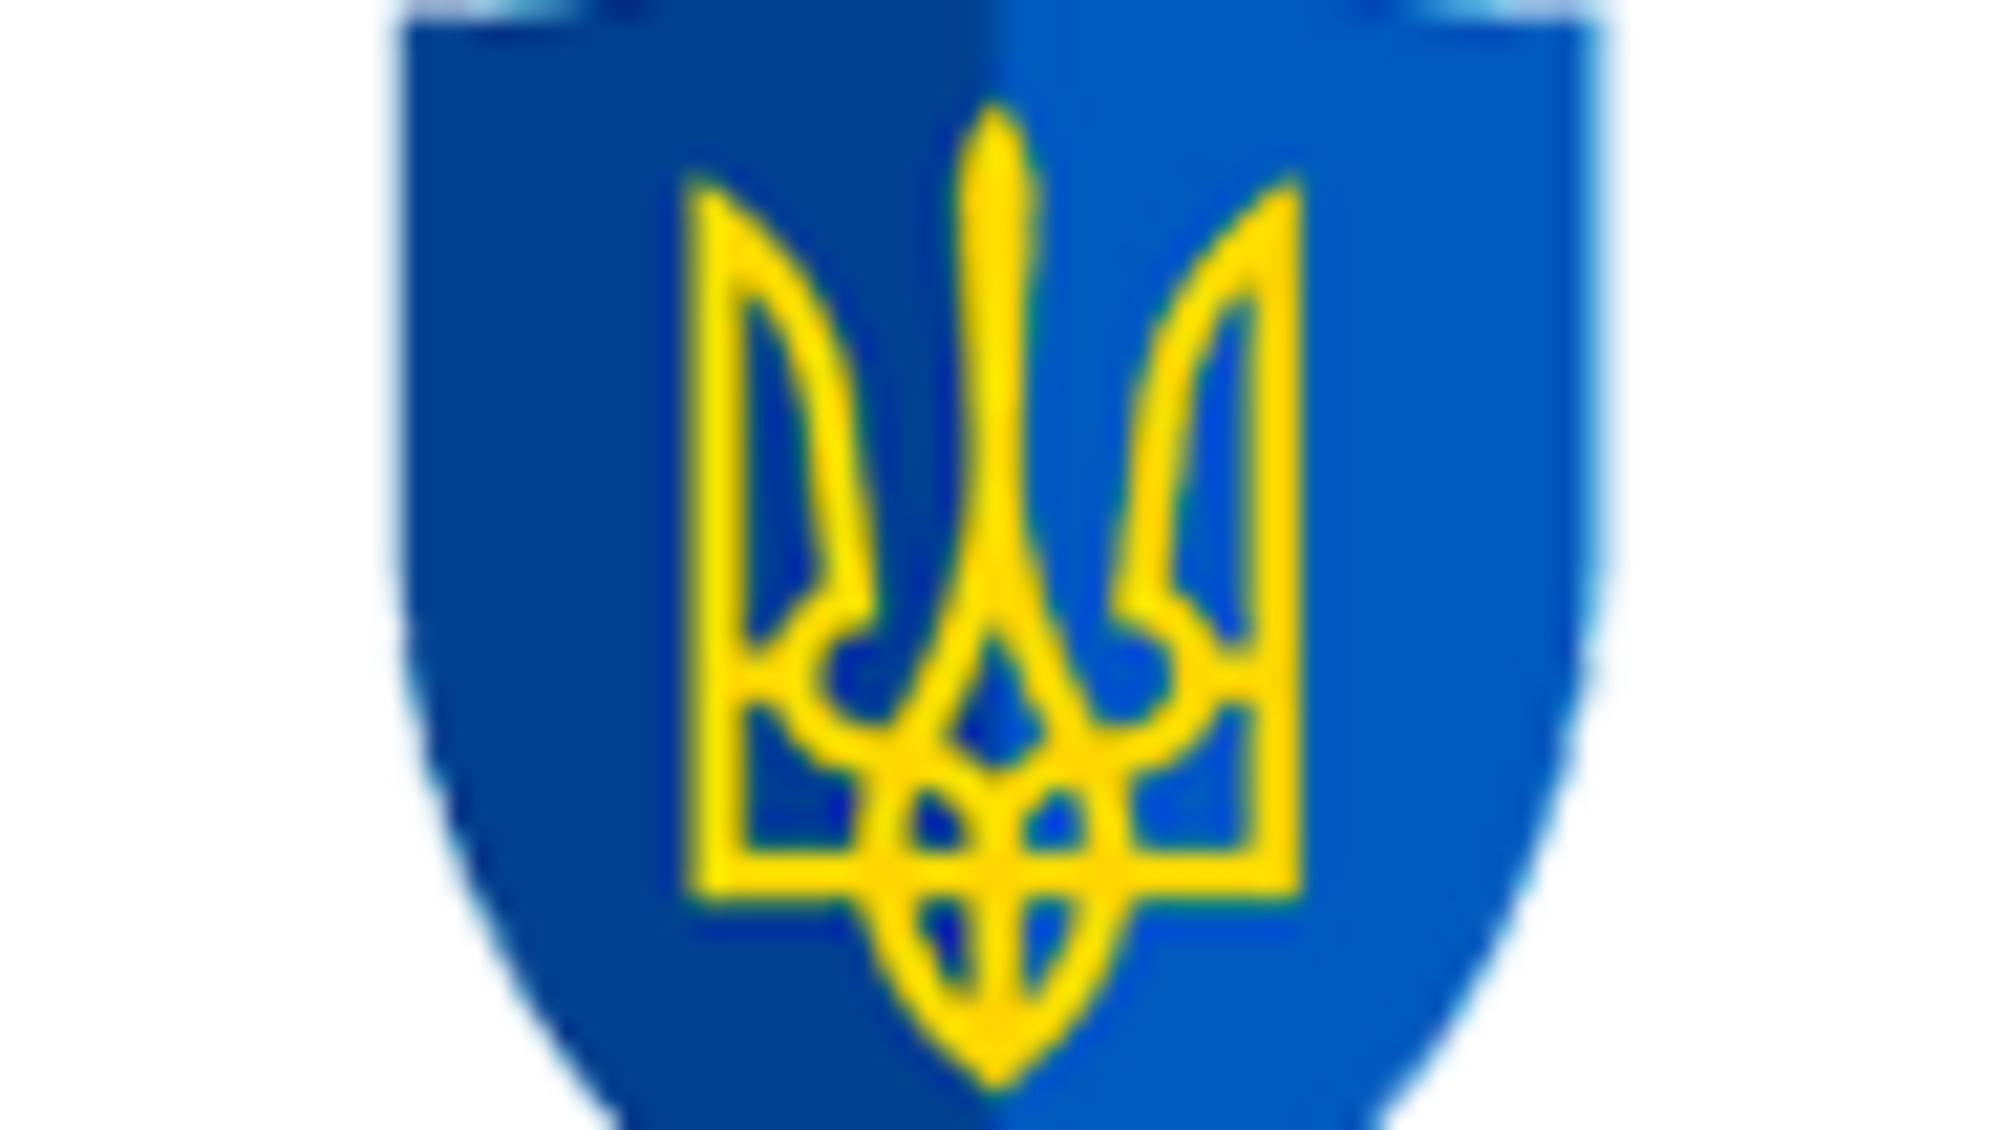 Підсумки проведення 11 грудня 2020 року співбесід з прокурорами регіональних прокуратур, у тому числі військових прокуратур регіонів України і об’єднаних сил, які з поважних причин не брали участь в атестації